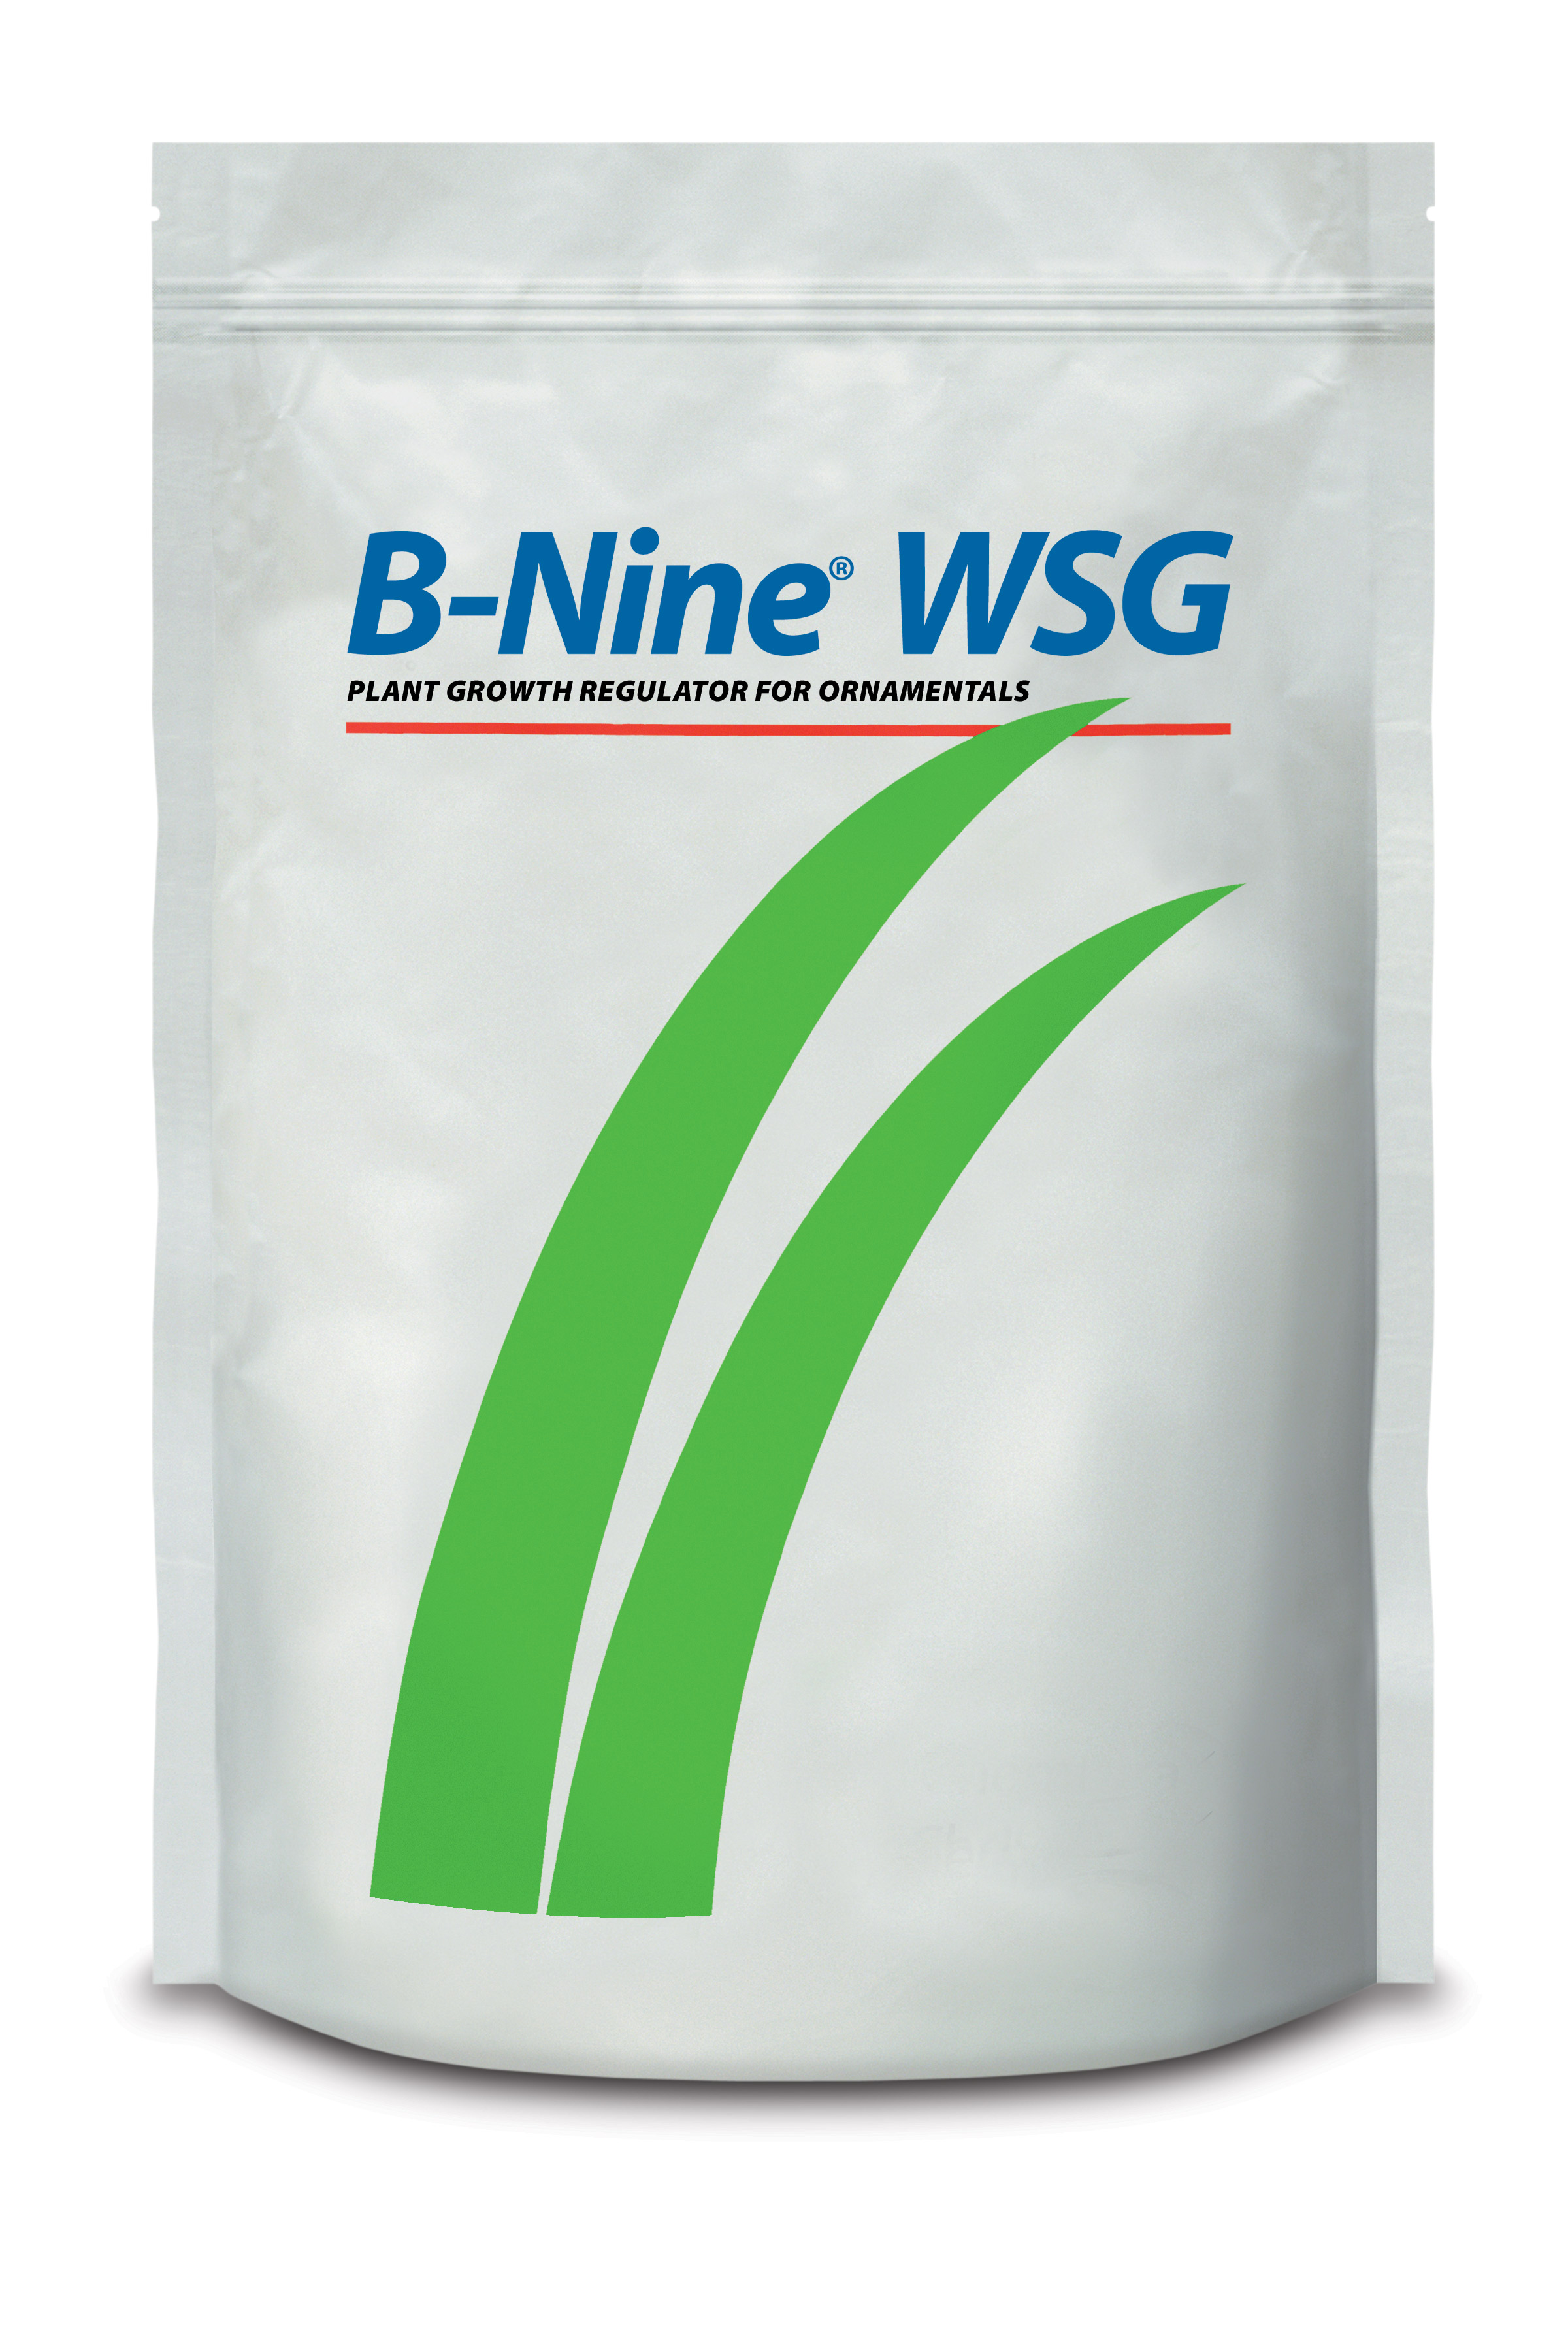 B-Nine® WSG 1 lb Bag - 12 per case - Growth Regulators